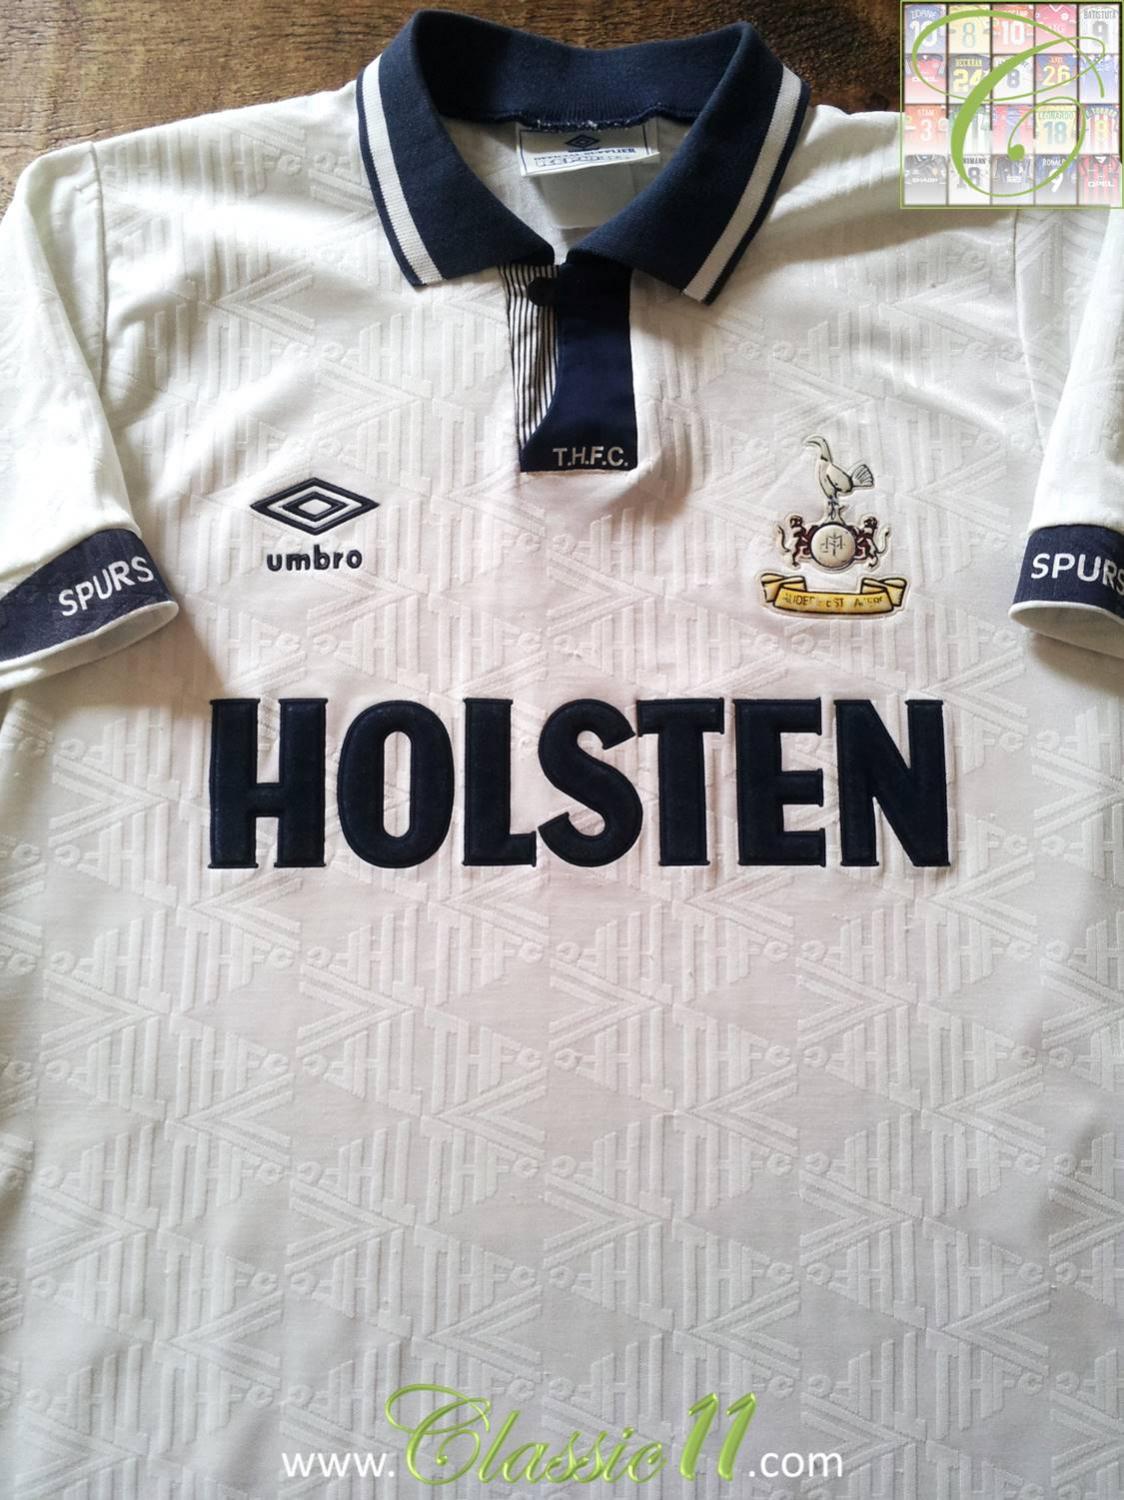 maglia Tottenham umbro vintage camiseta calcio shirt Holsten Spurs 1992 1993